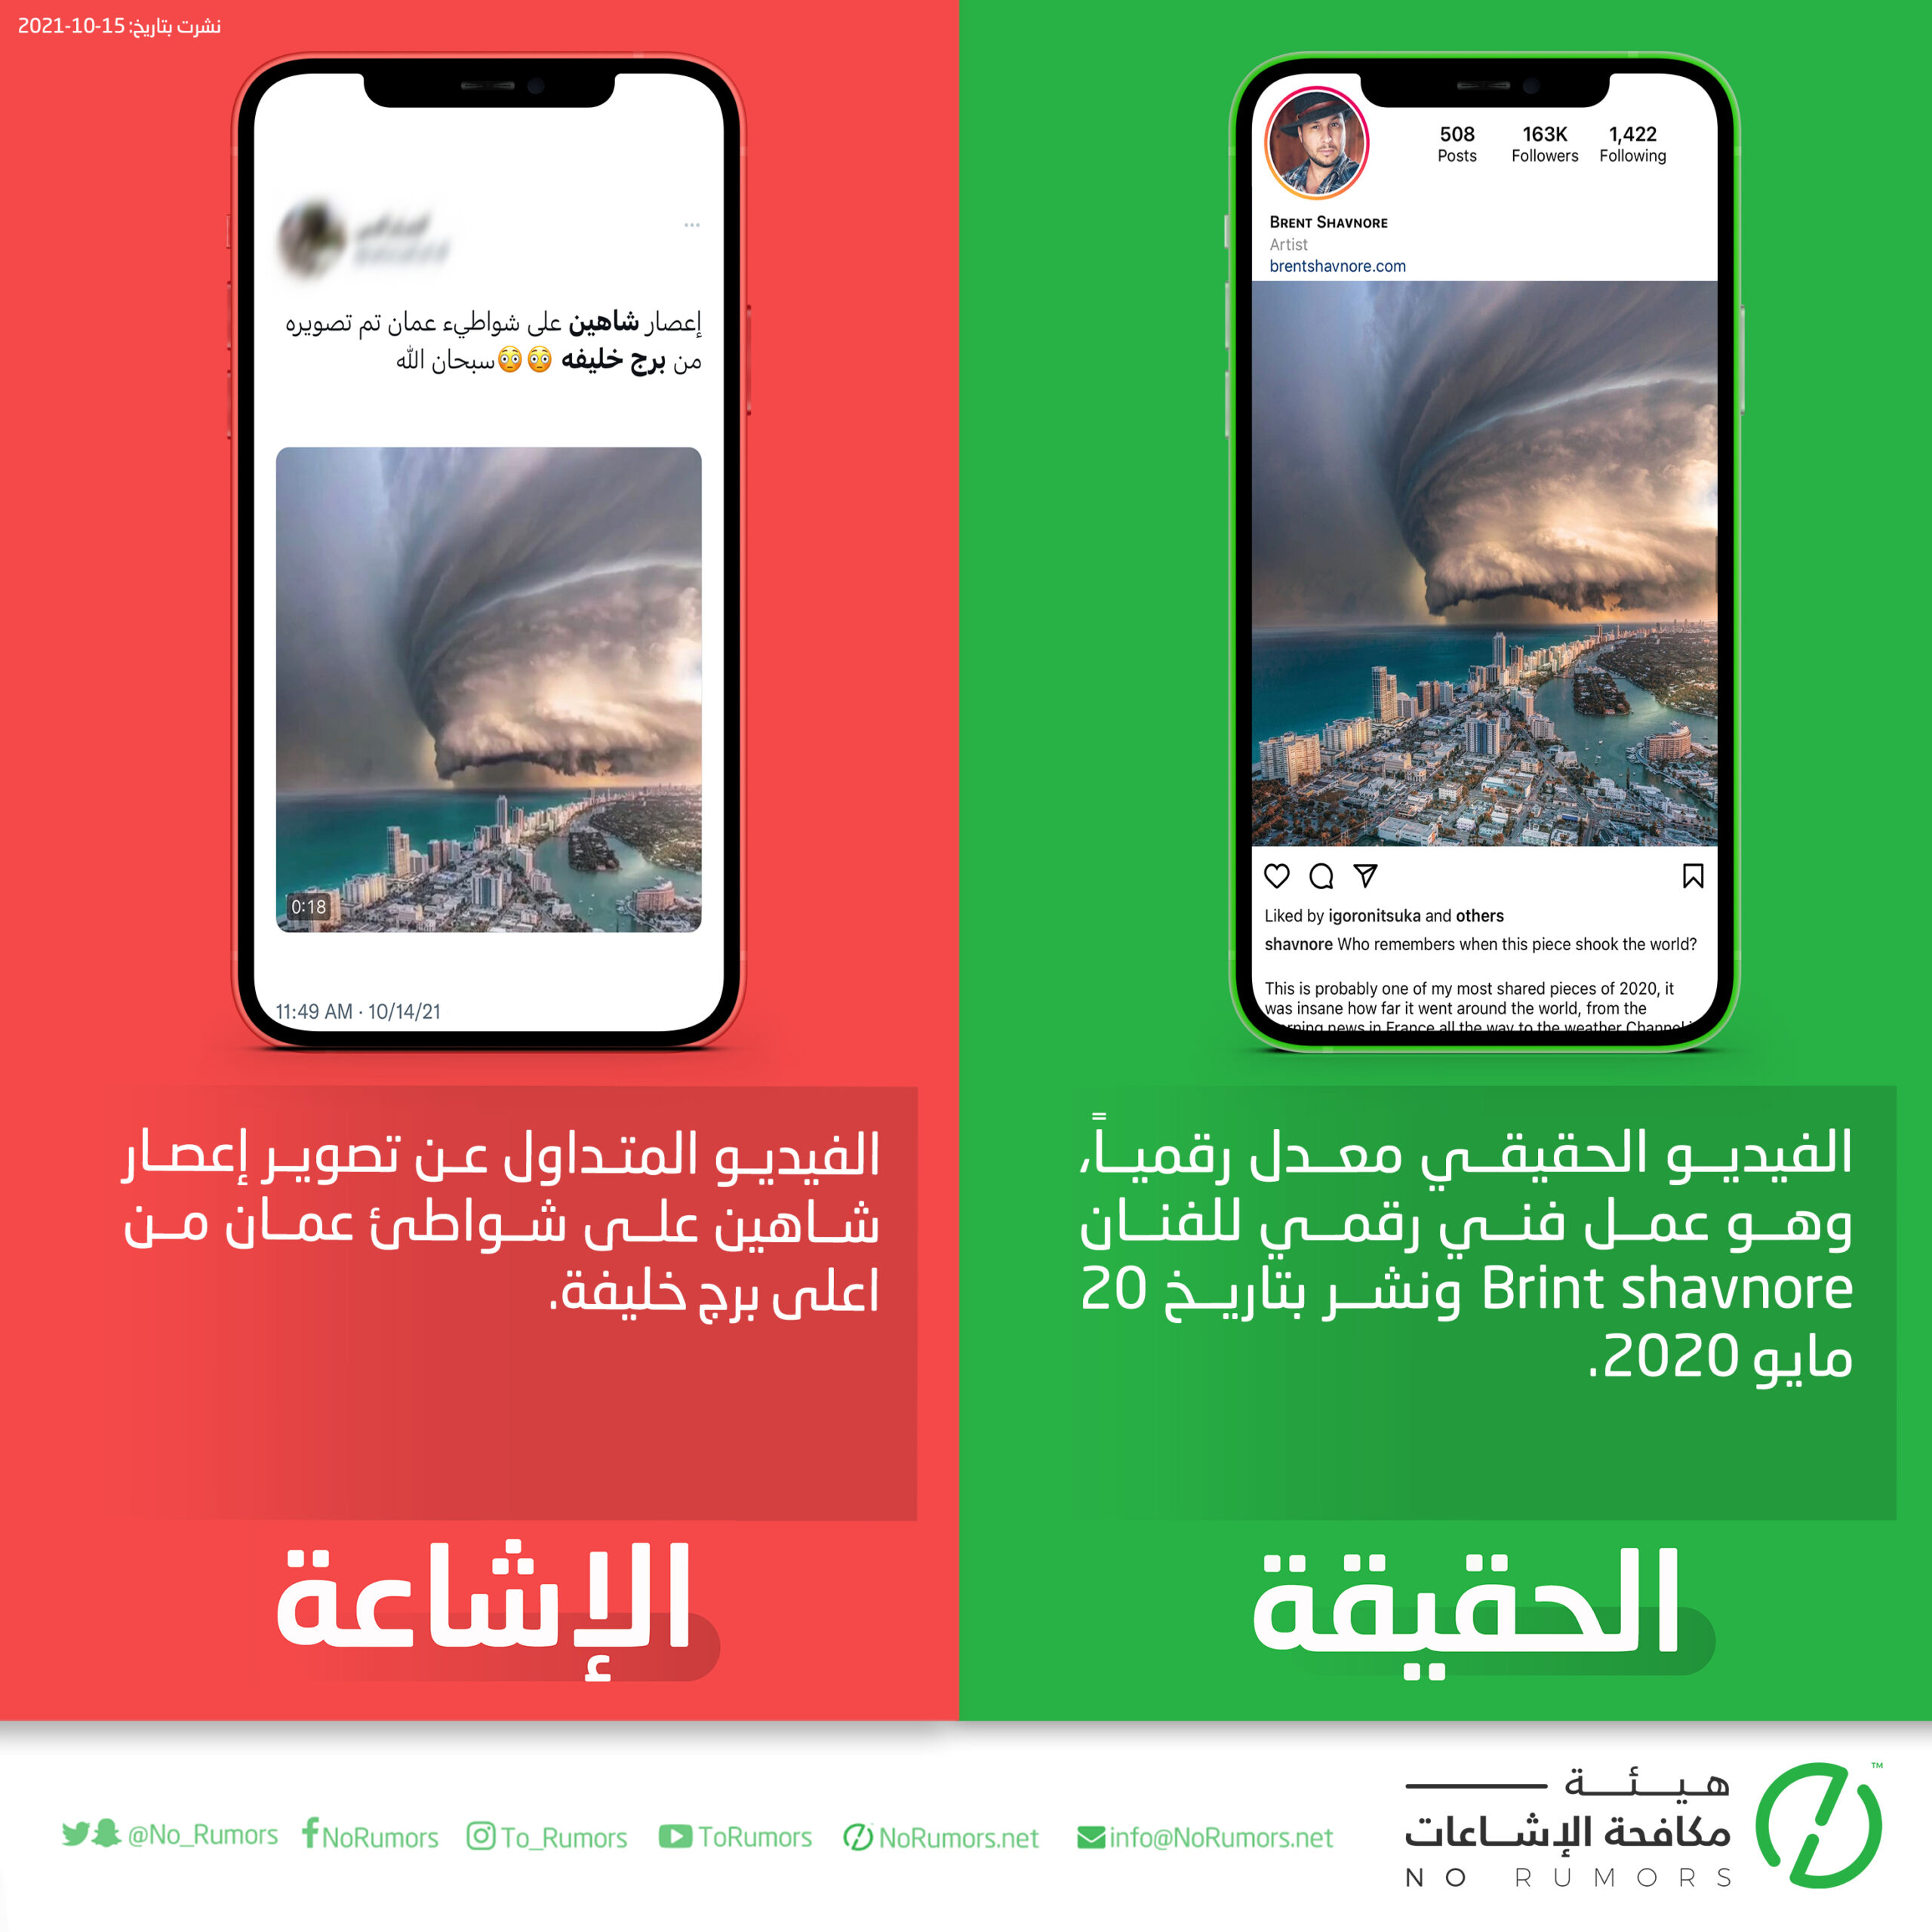 حقيقة الفيديو المتداول عن تصوير إعصار شاهين على شواطئ عمان من اعلى برج خليفة